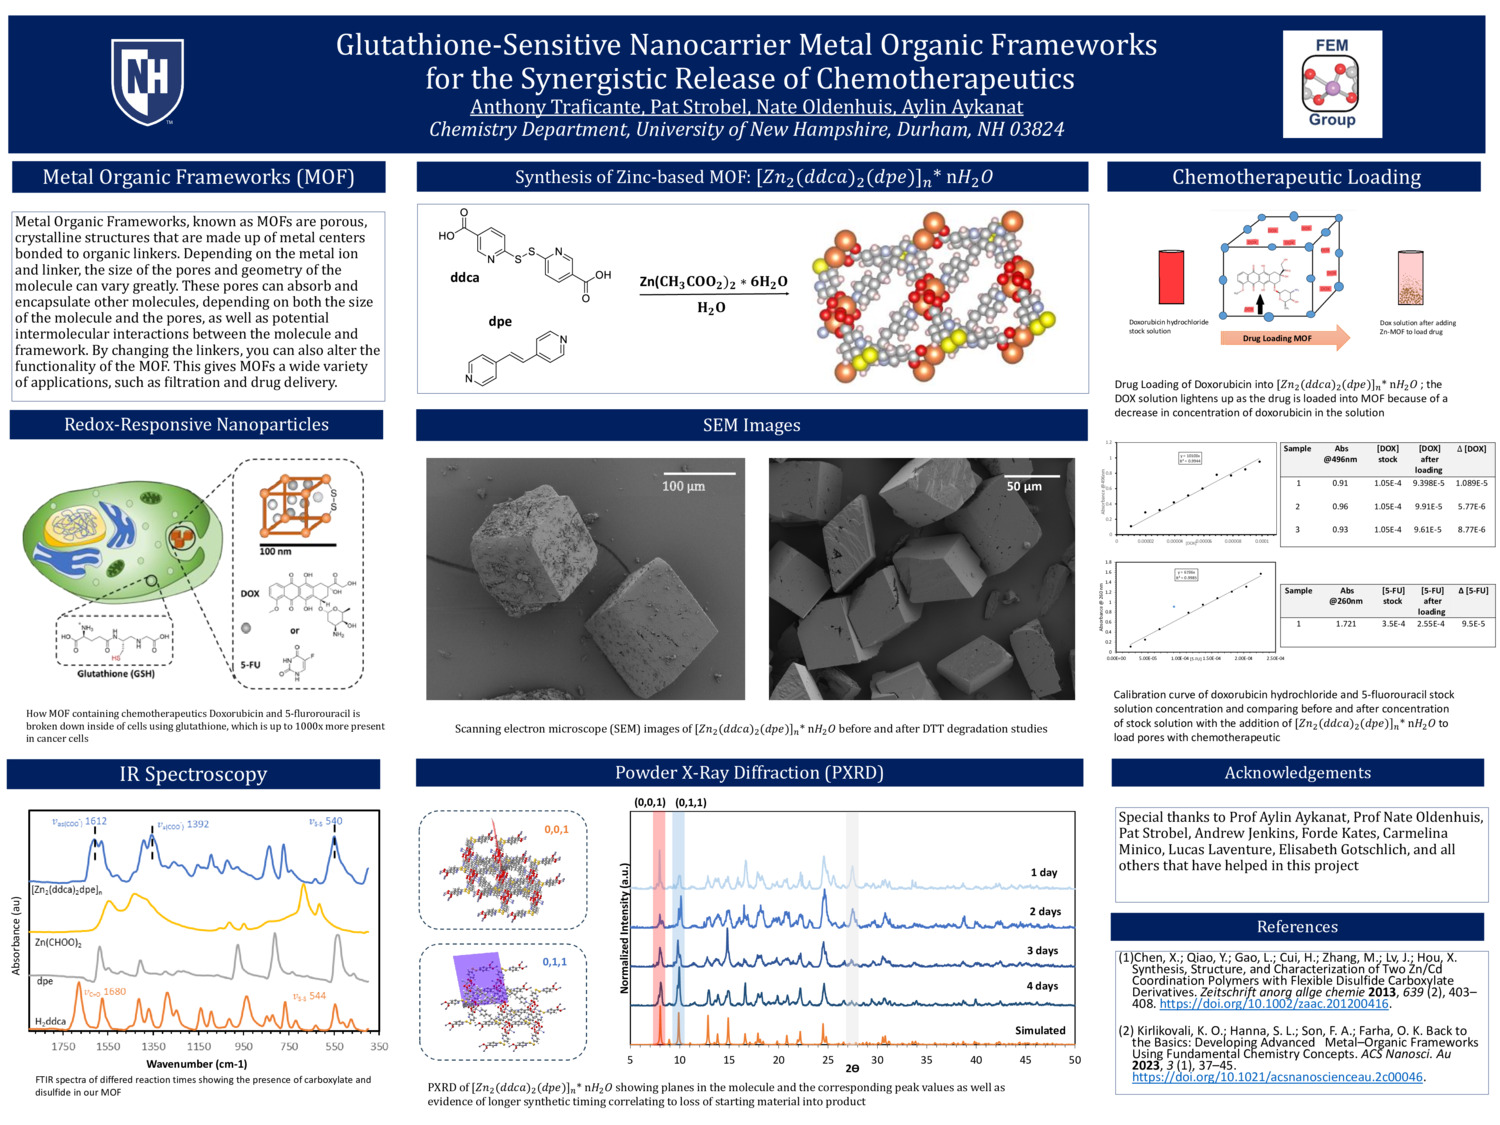 Glutathione-Sensitive Nanocarrier Covalent Organic Frameworks For The Synergistic Release Of Chemotherapeutics by avt1007